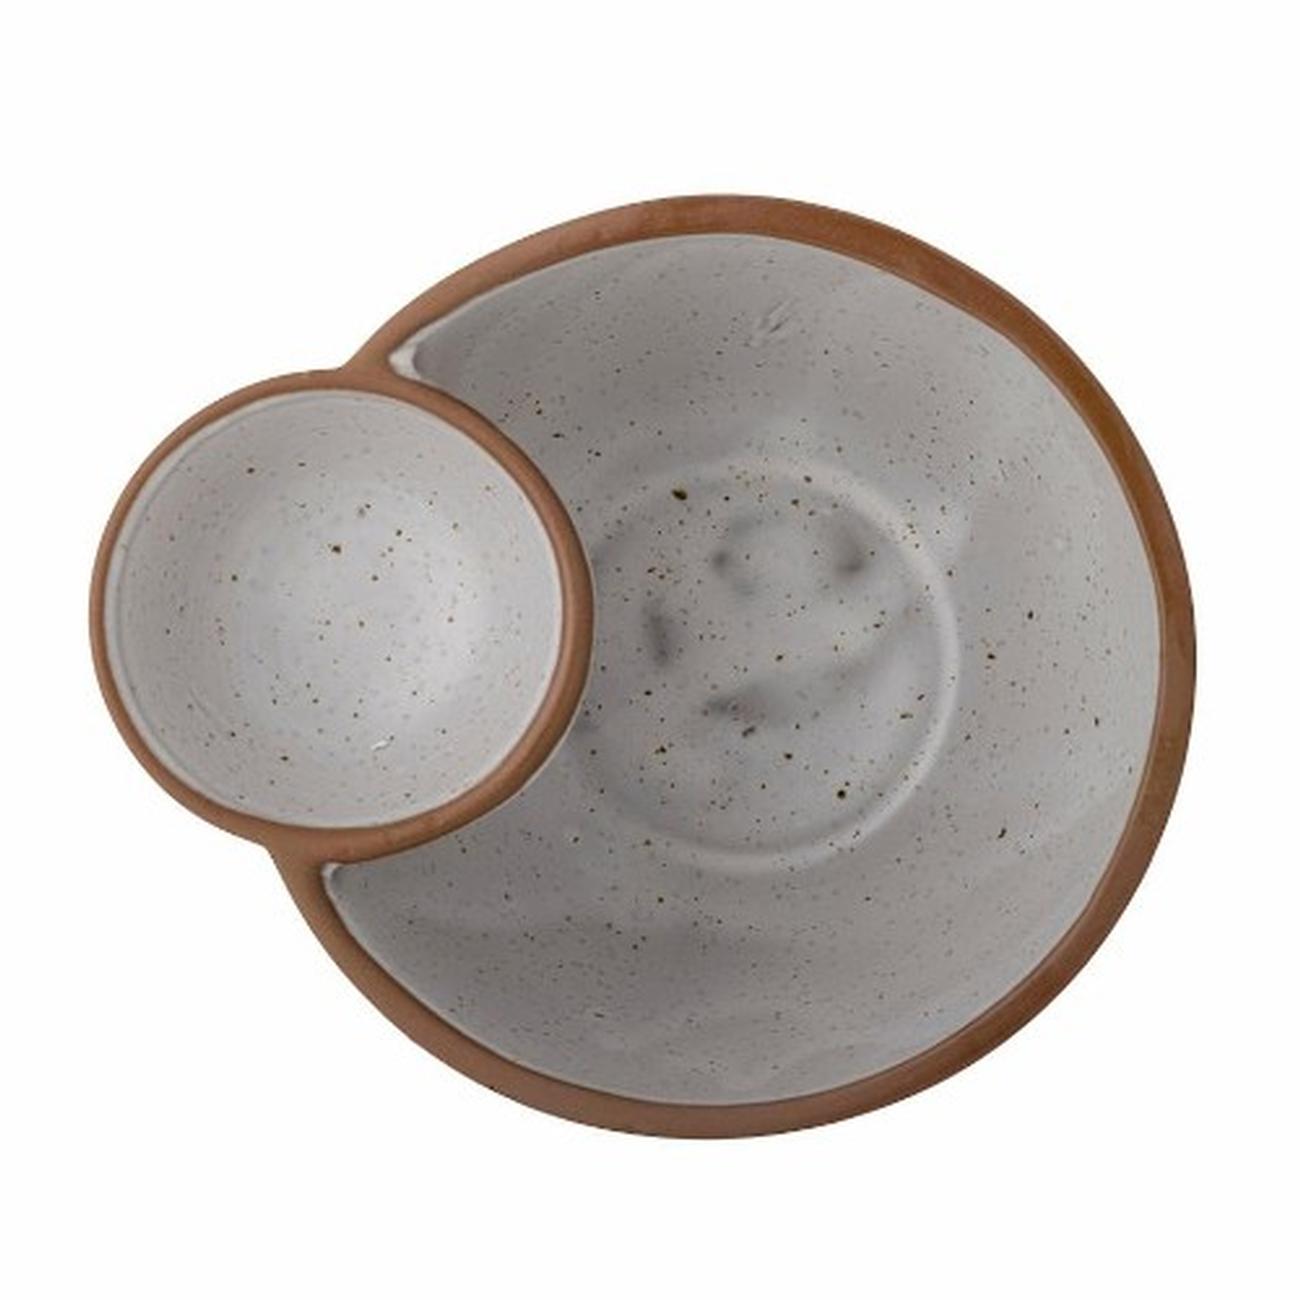 jocelyn-bowl-brown-stoneware - Jocelyn Brown Bowl Stoneware 